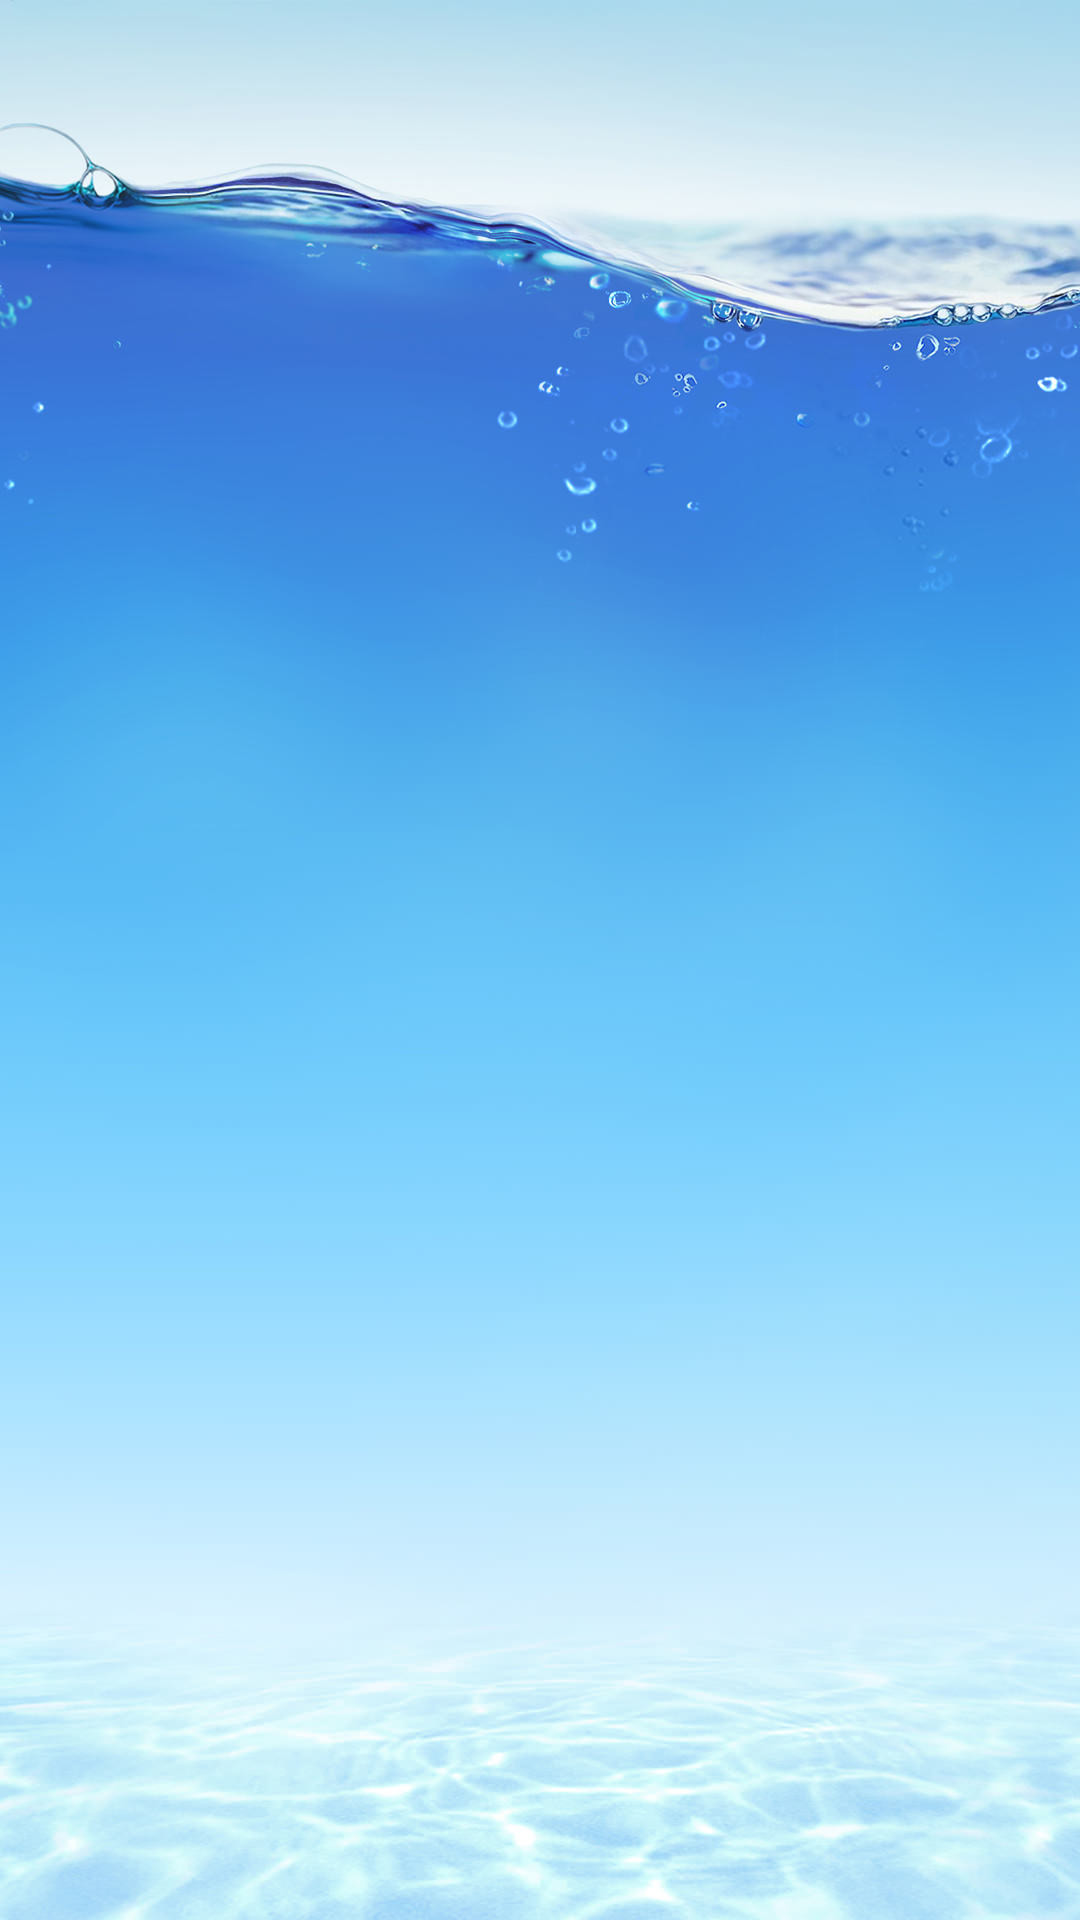 1080x1920 underwater - Cool fancy Smartphone wallpaper